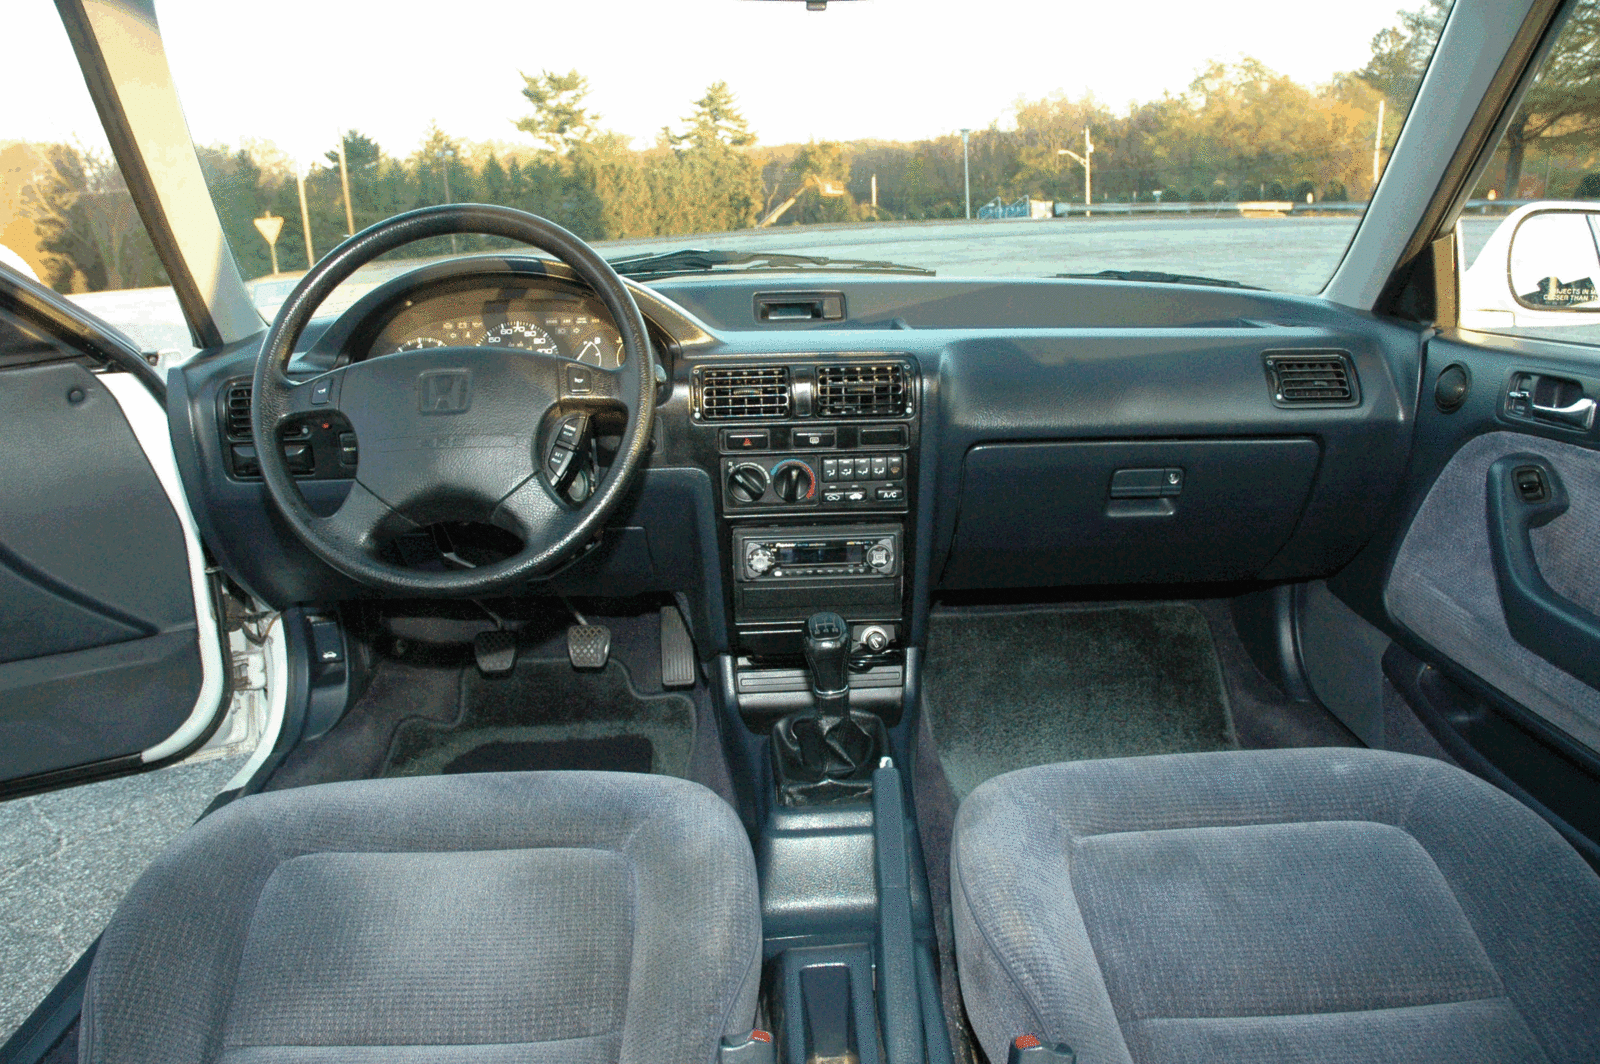 1992 Honda accord interior pictures